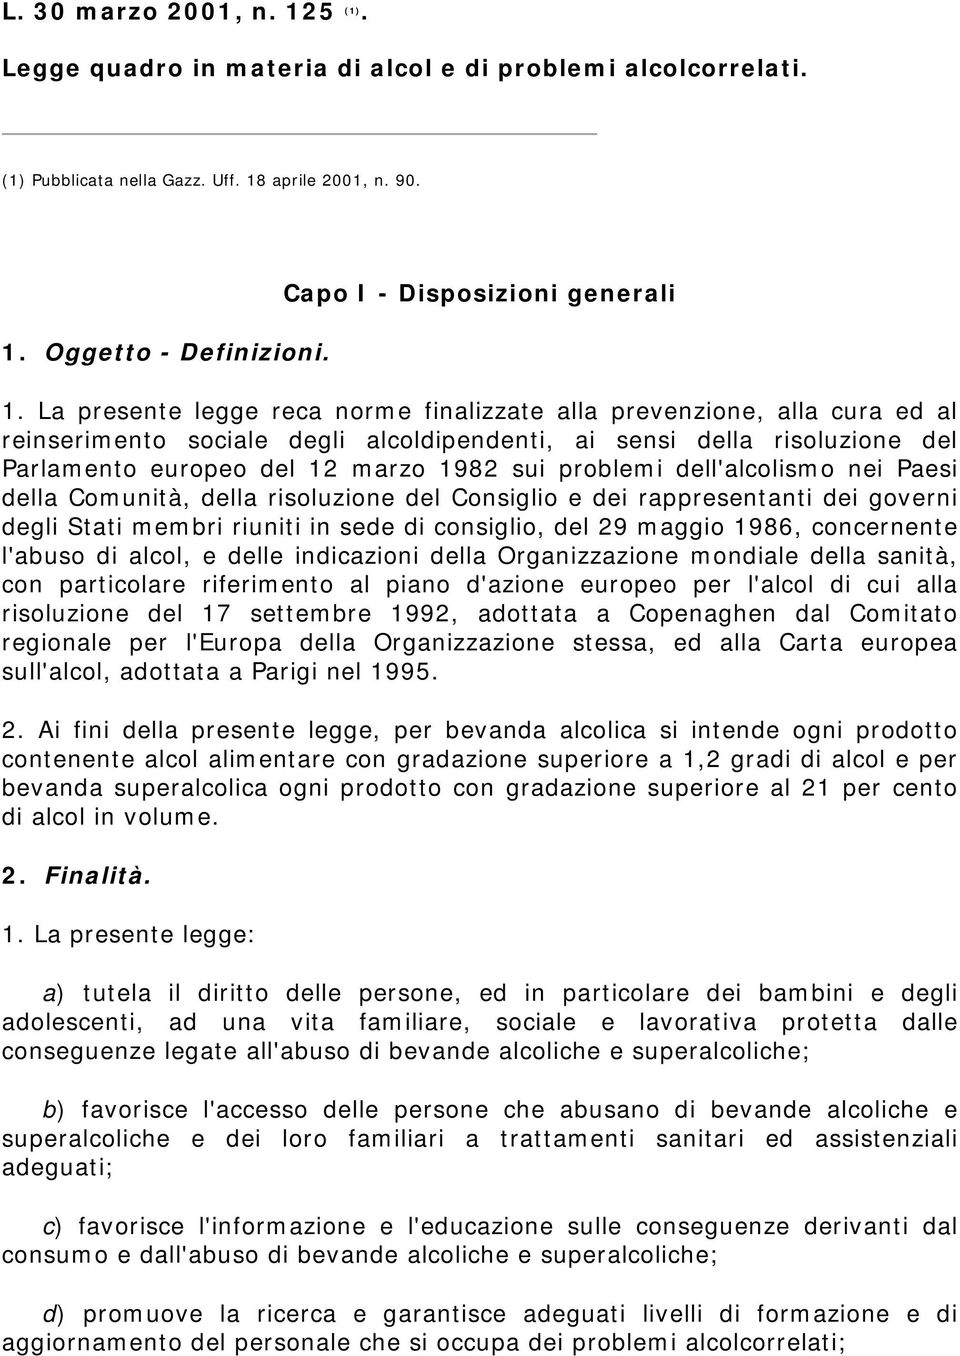 La presente legge reca norme finalizzate alla prevenzione, alla cura ed al reinserimento sociale degli alcoldipendenti, ai sensi della risoluzione del Parlamento europeo del 12 marzo 1982 sui